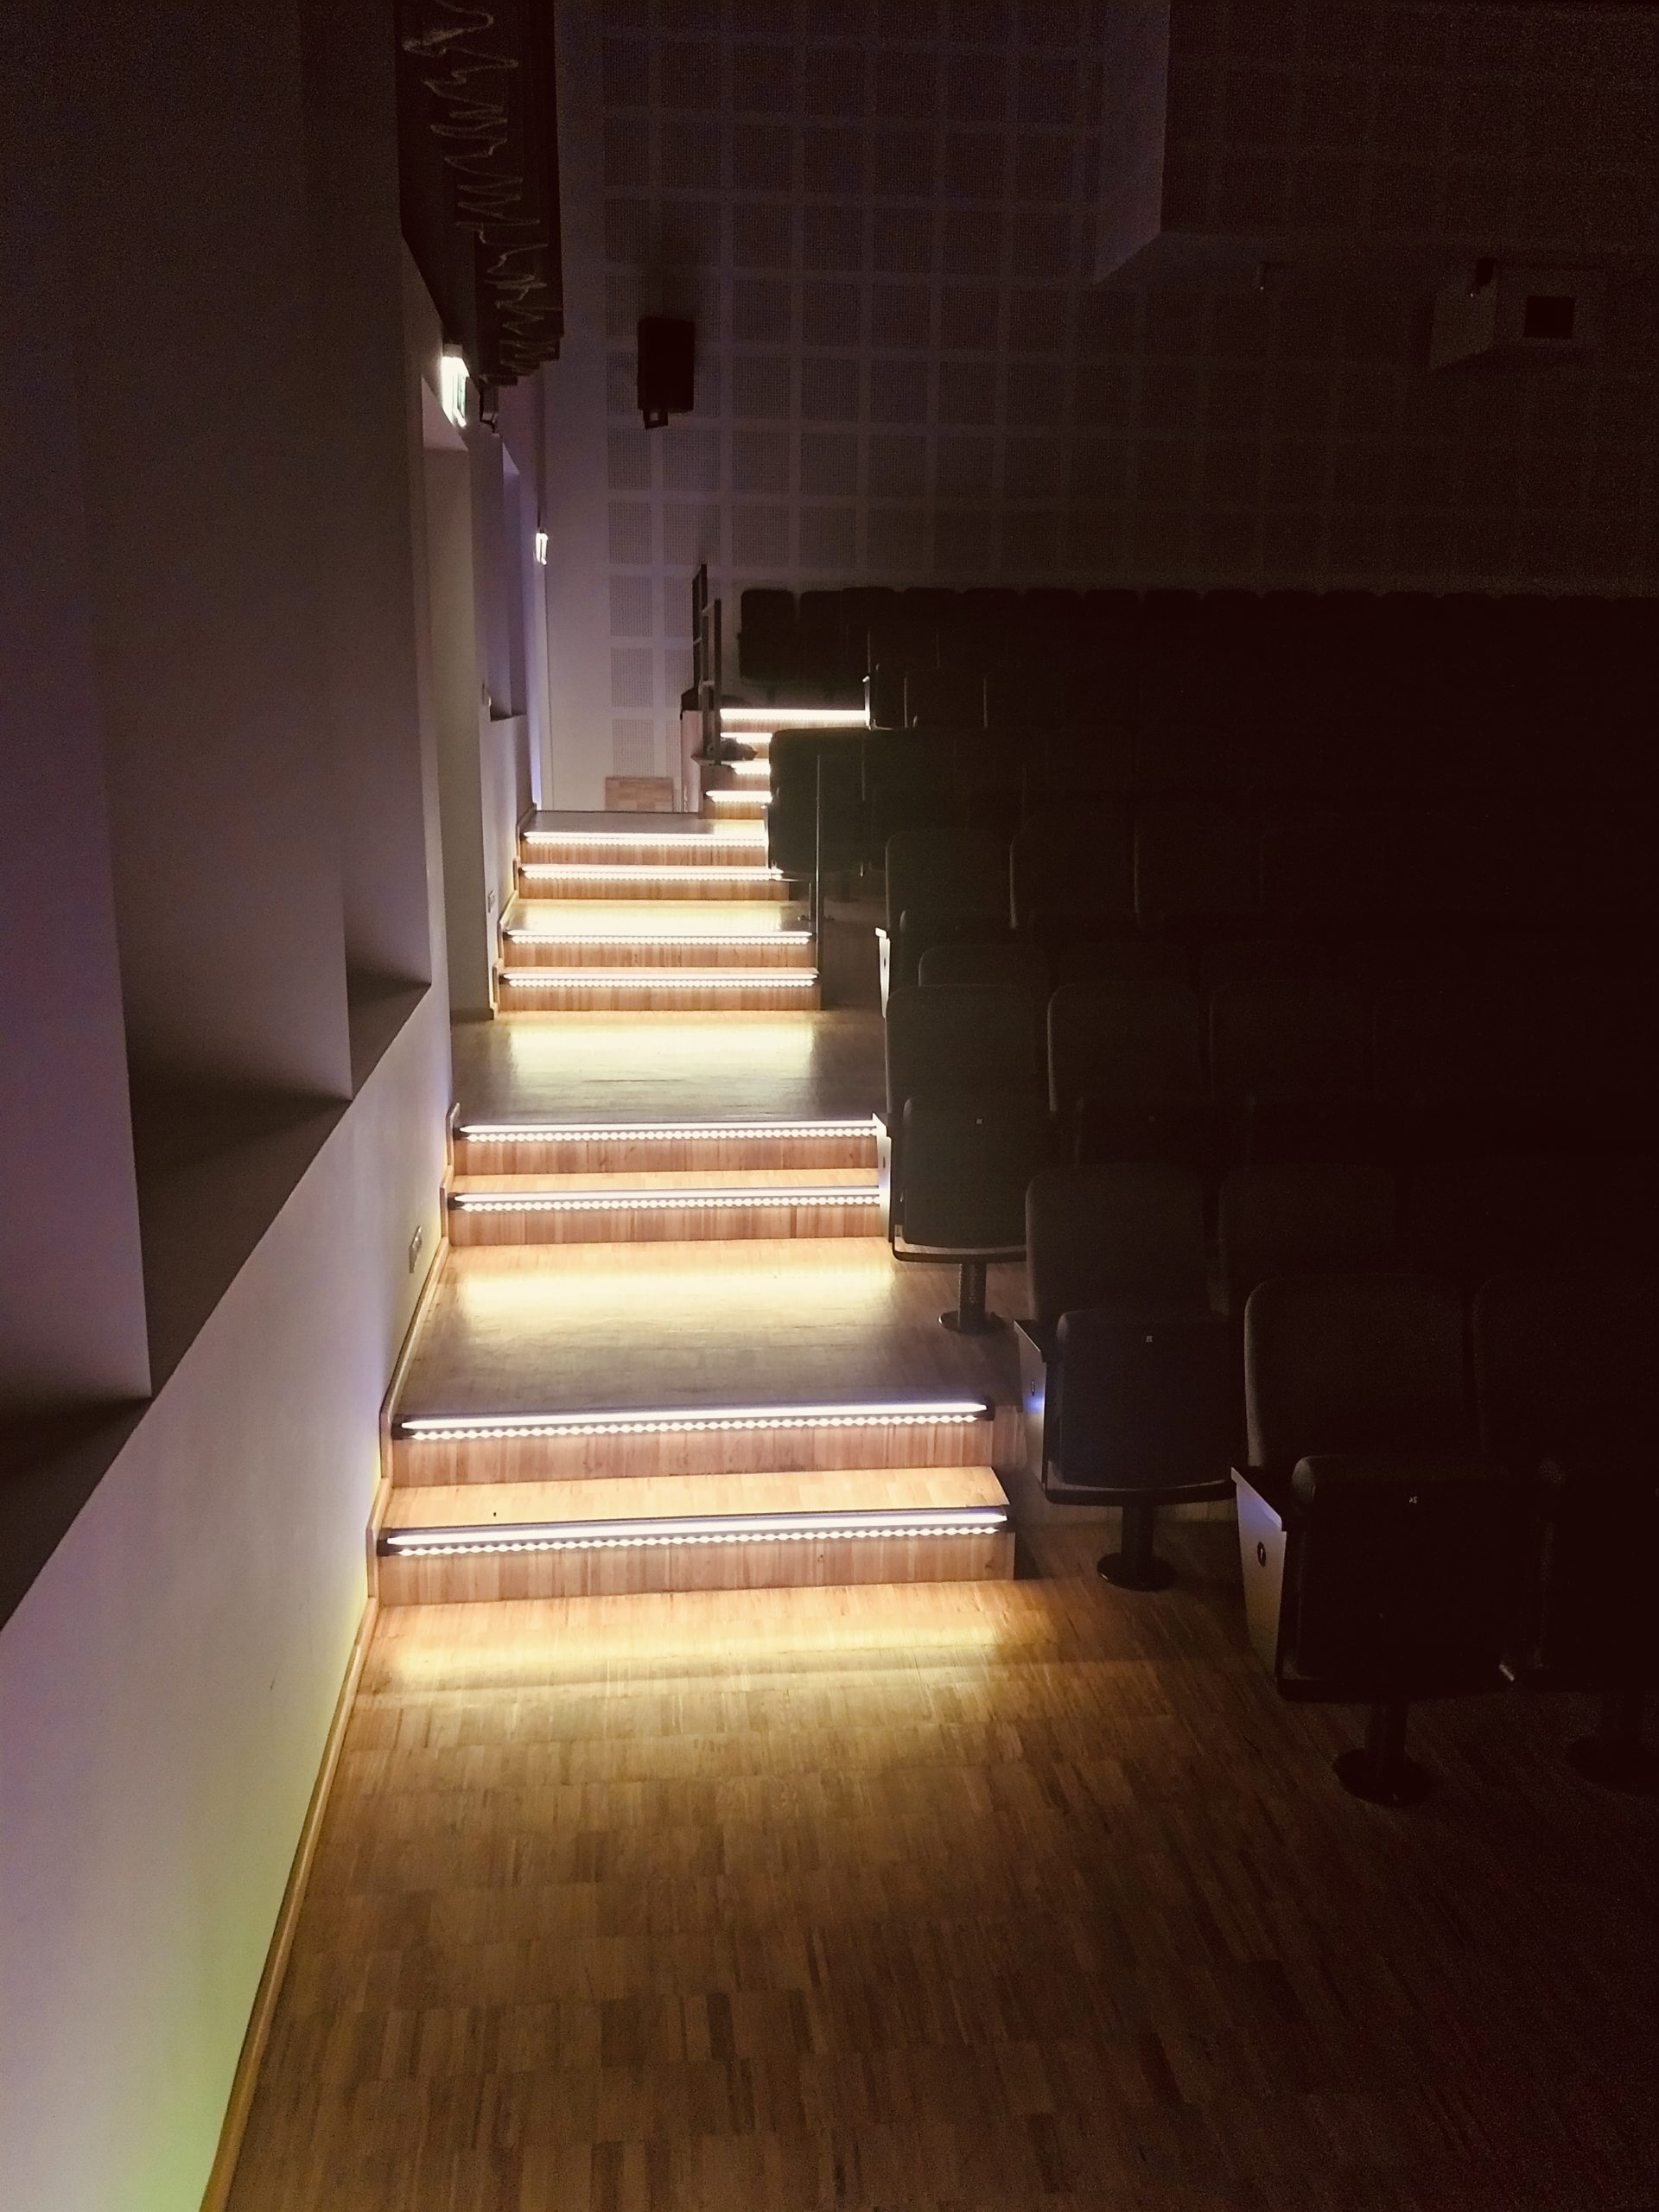 10Pcs vertiefte LED Plattform Licht Inground Fußboden Treppen Schritt Licht T9I2 